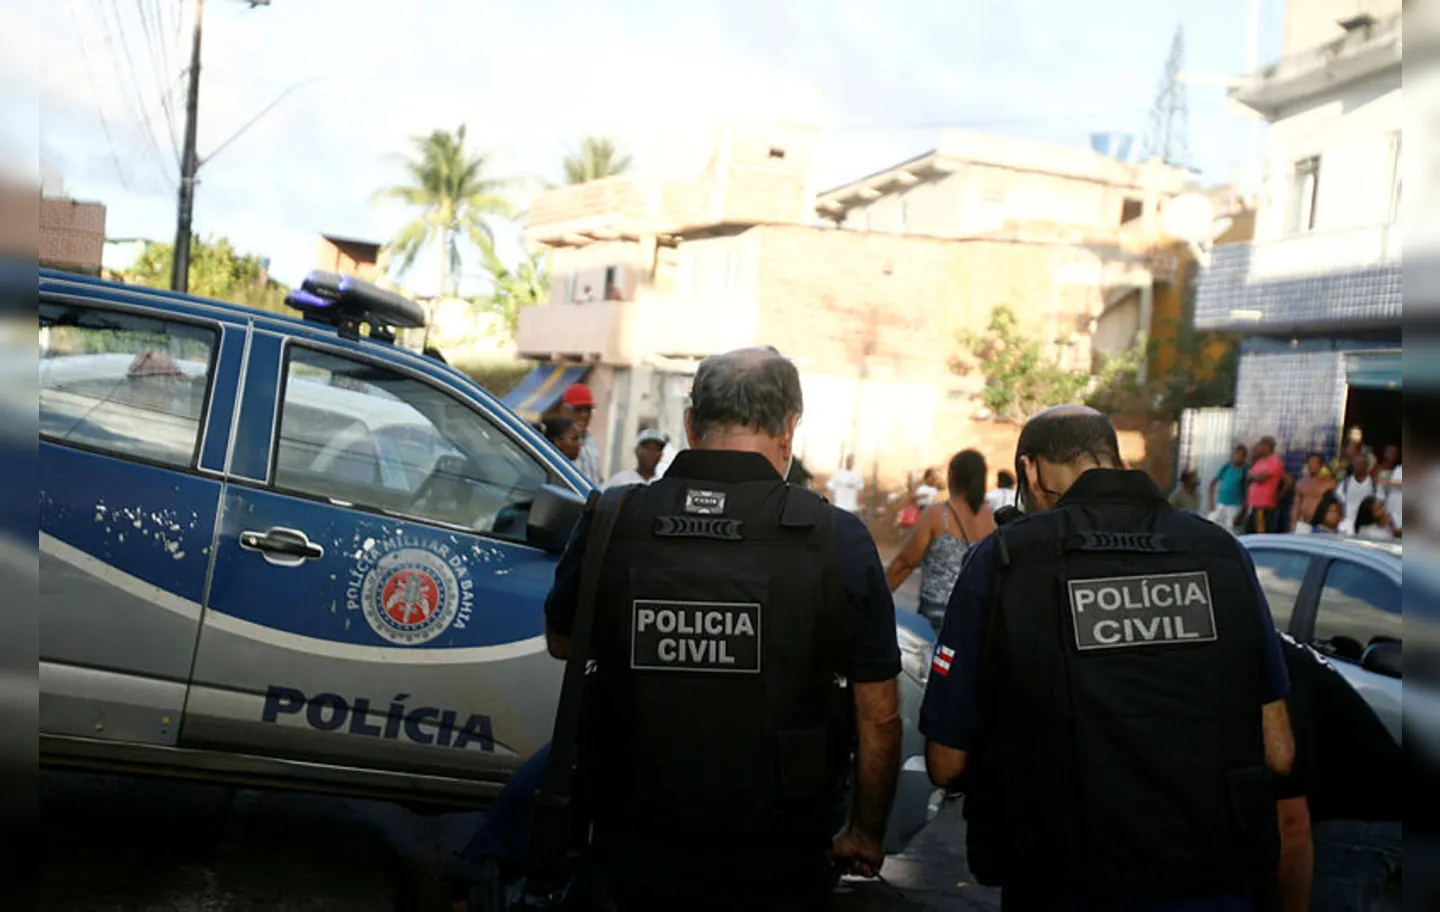 Sindicato dos Policiais Civis do Estado afirma que os disparos foram efetuados por suspeitos de tráfico de drogas na região